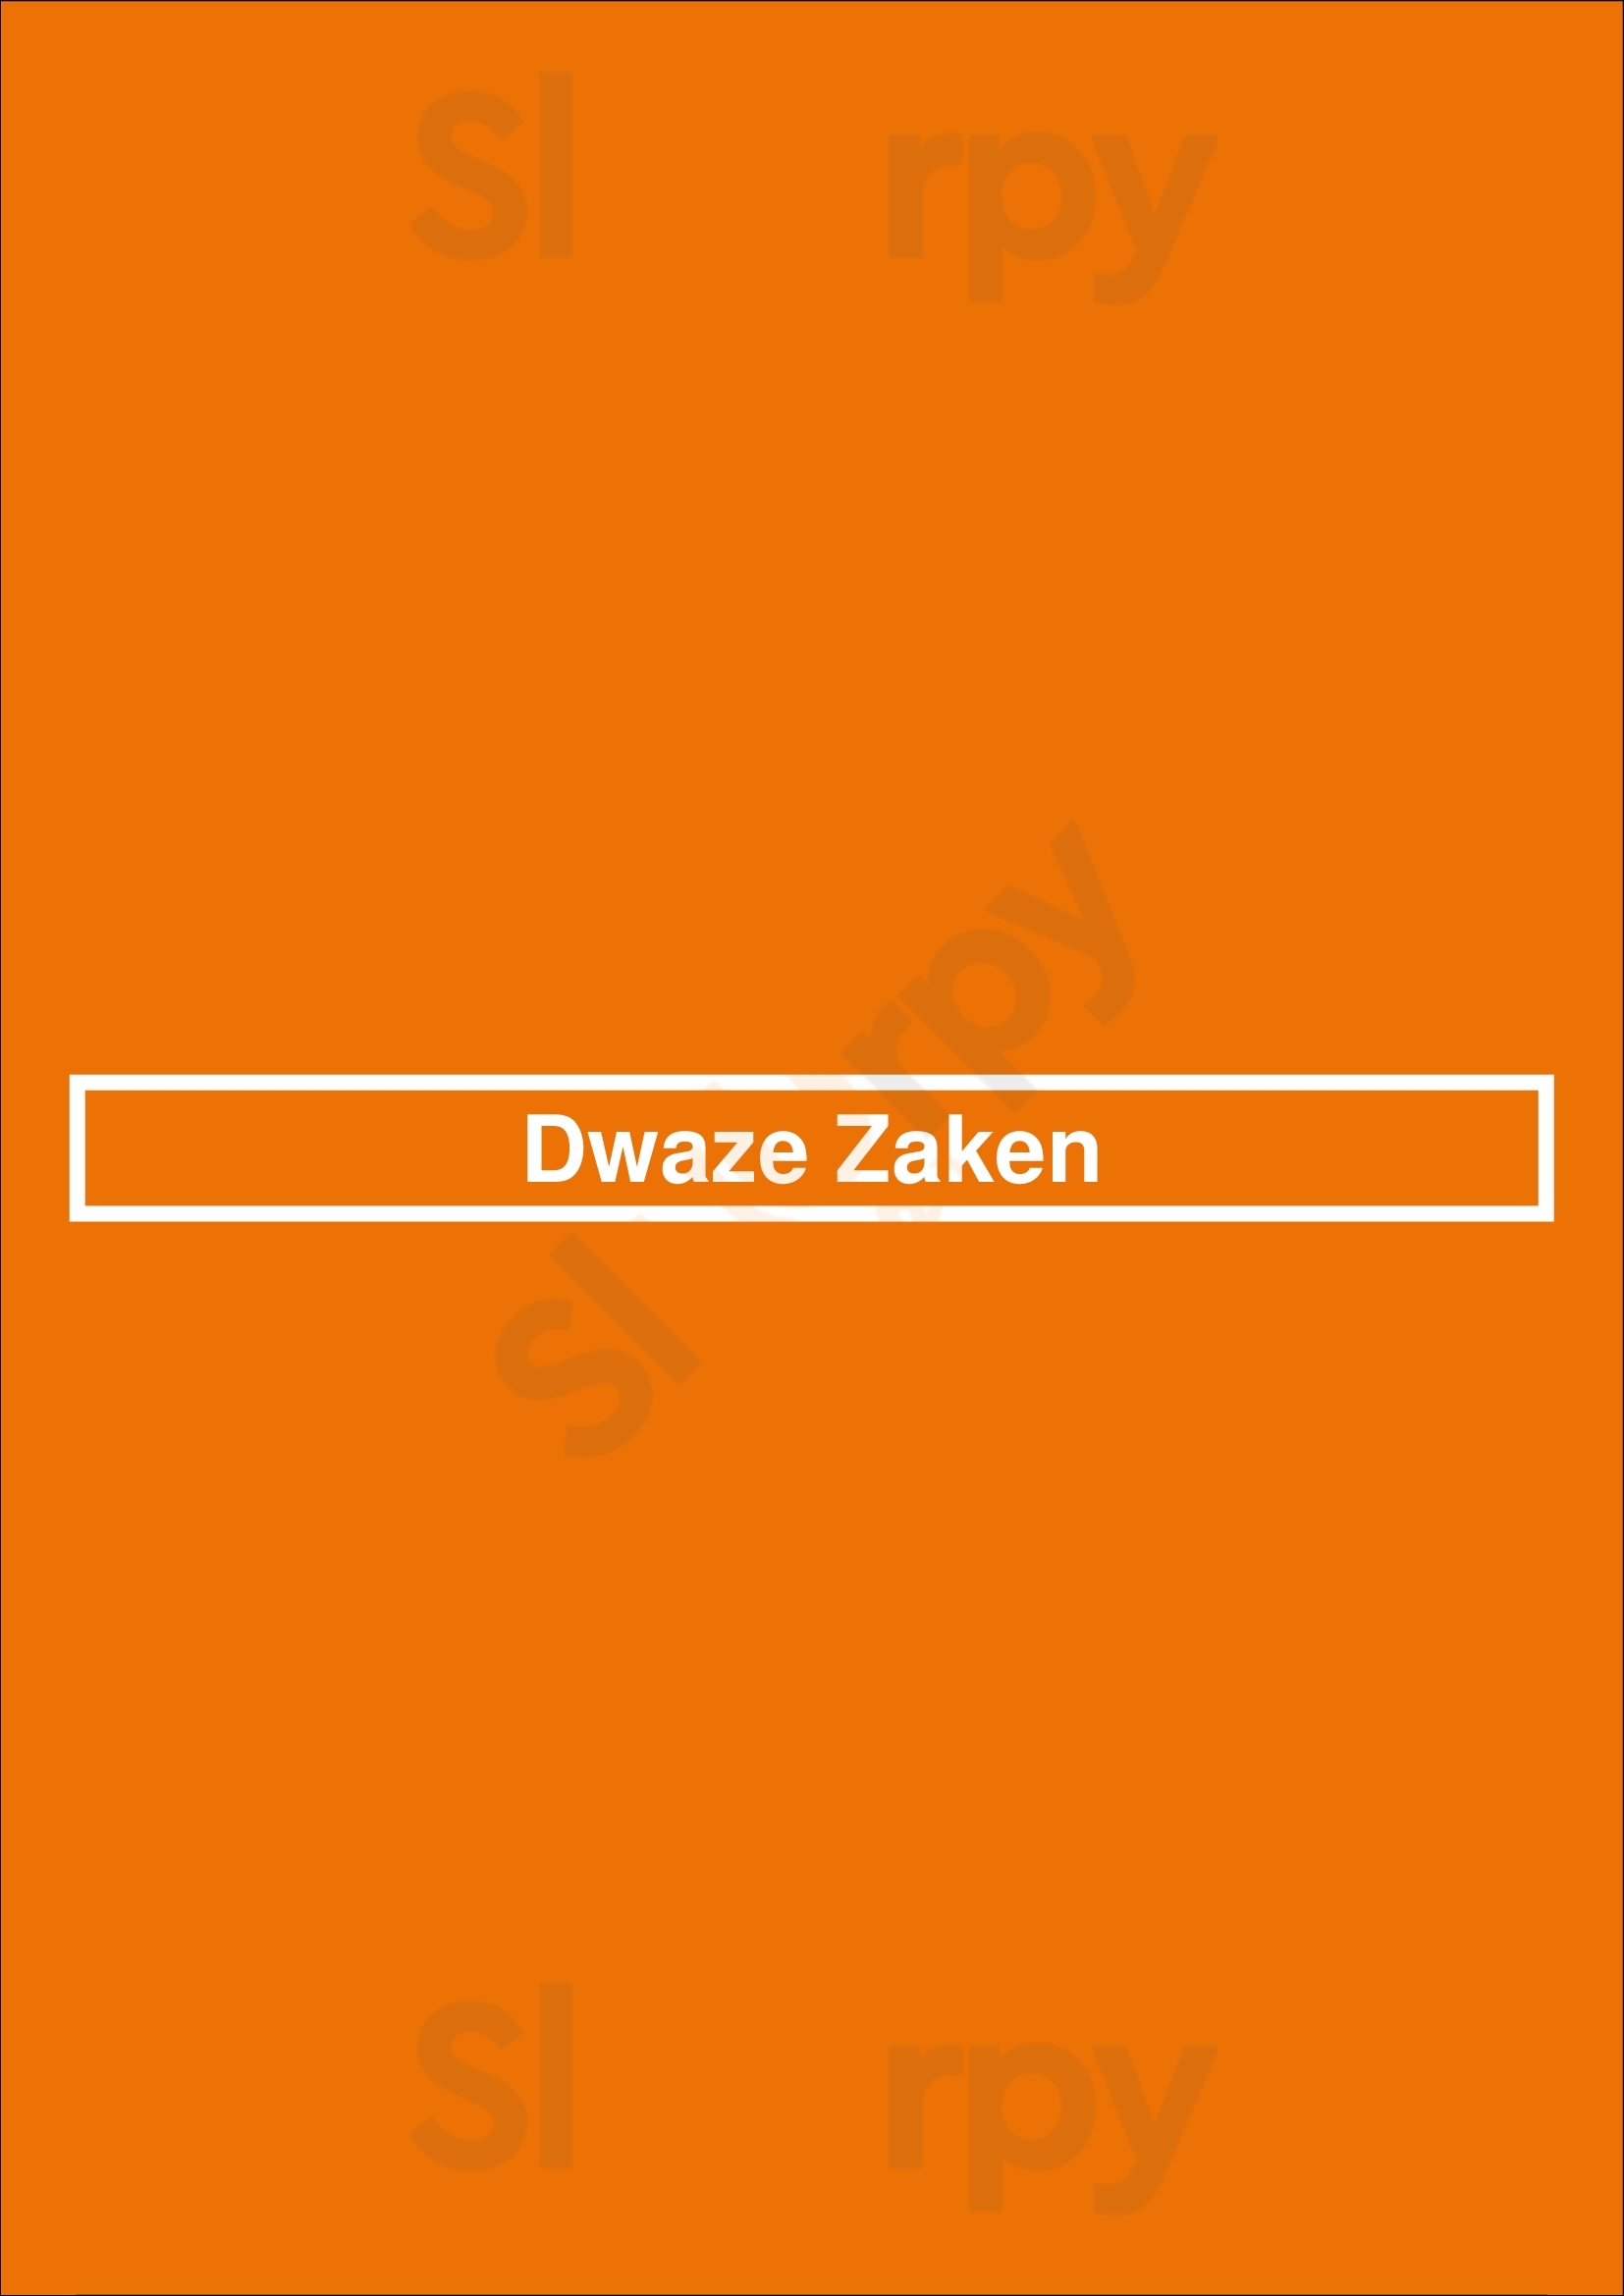 Dwaze Zaken Amsterdam Menu - 1